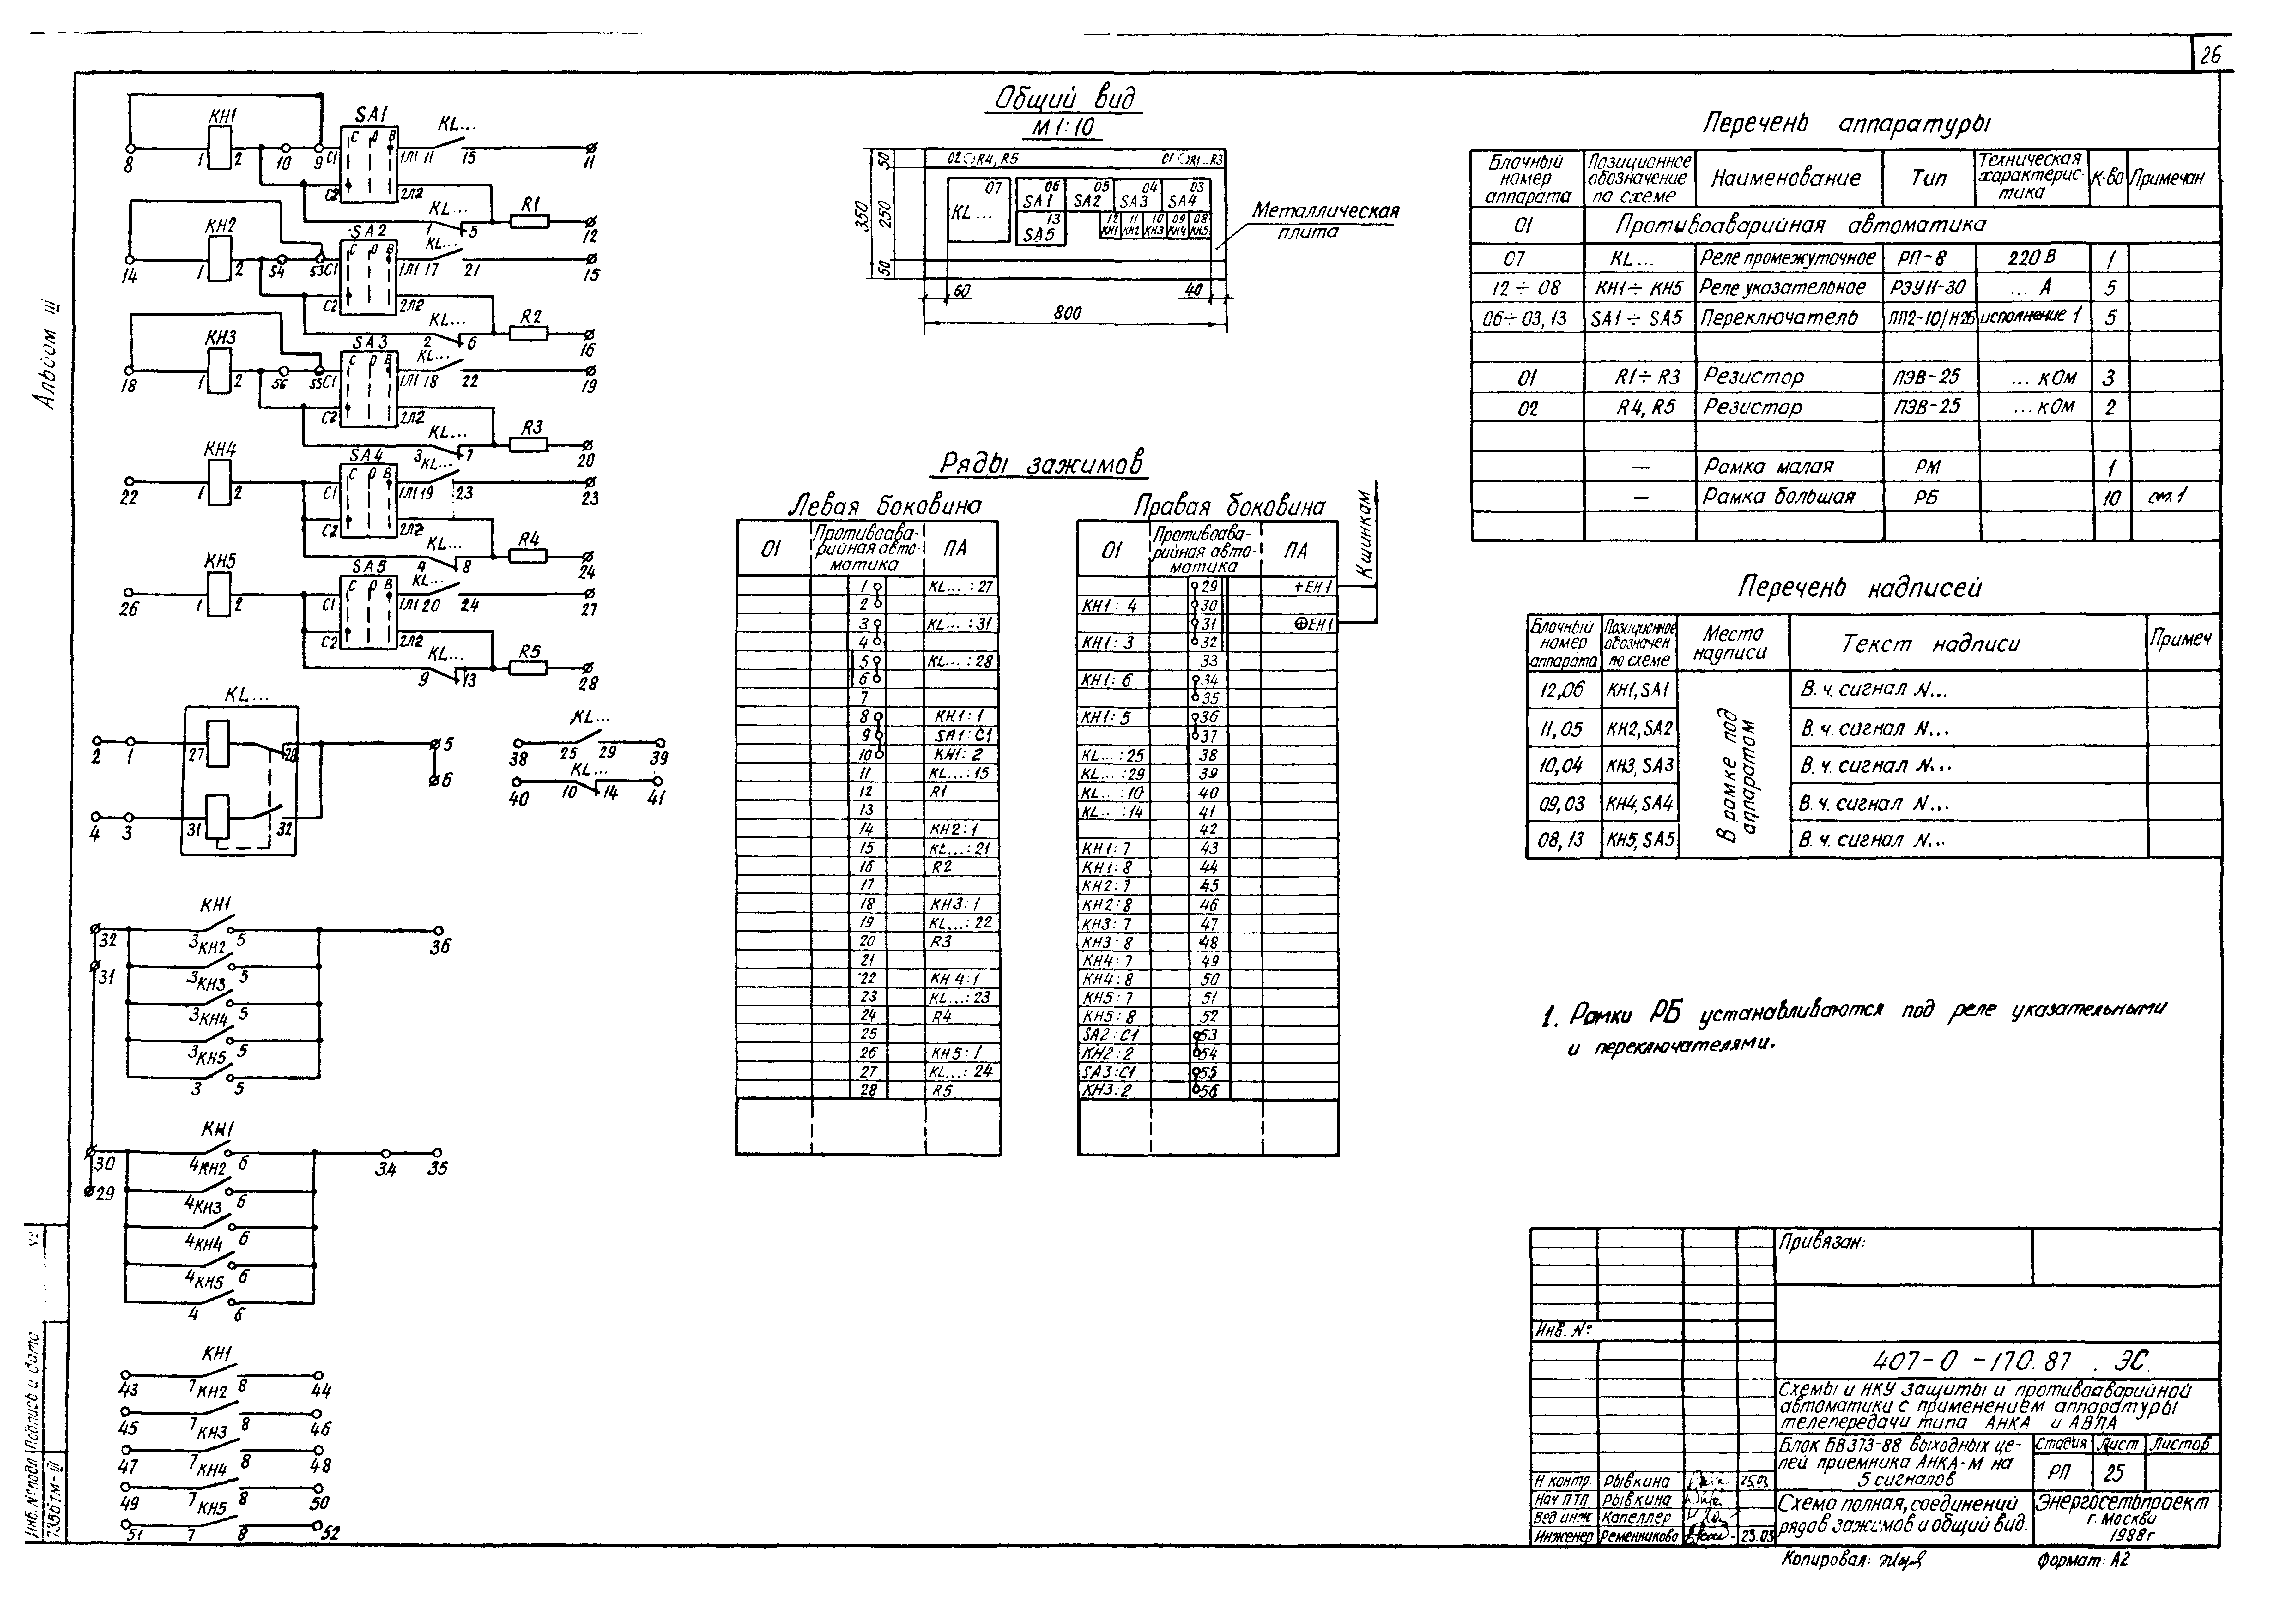 Типовые материалы для проектирования 407-0-170.87